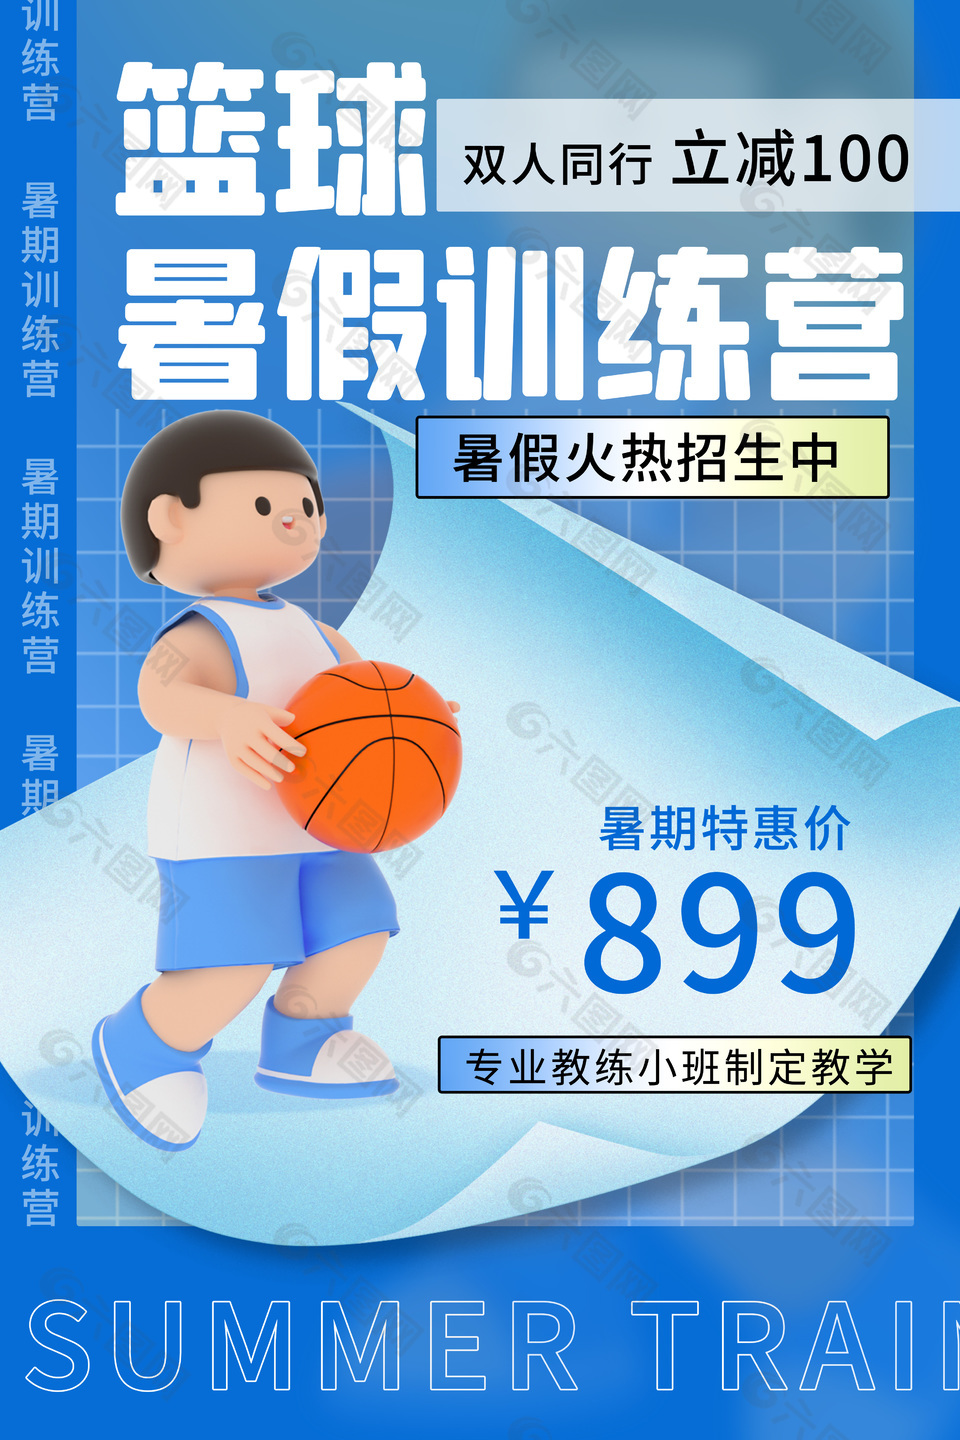 篮球训练营特惠宣传海报素材